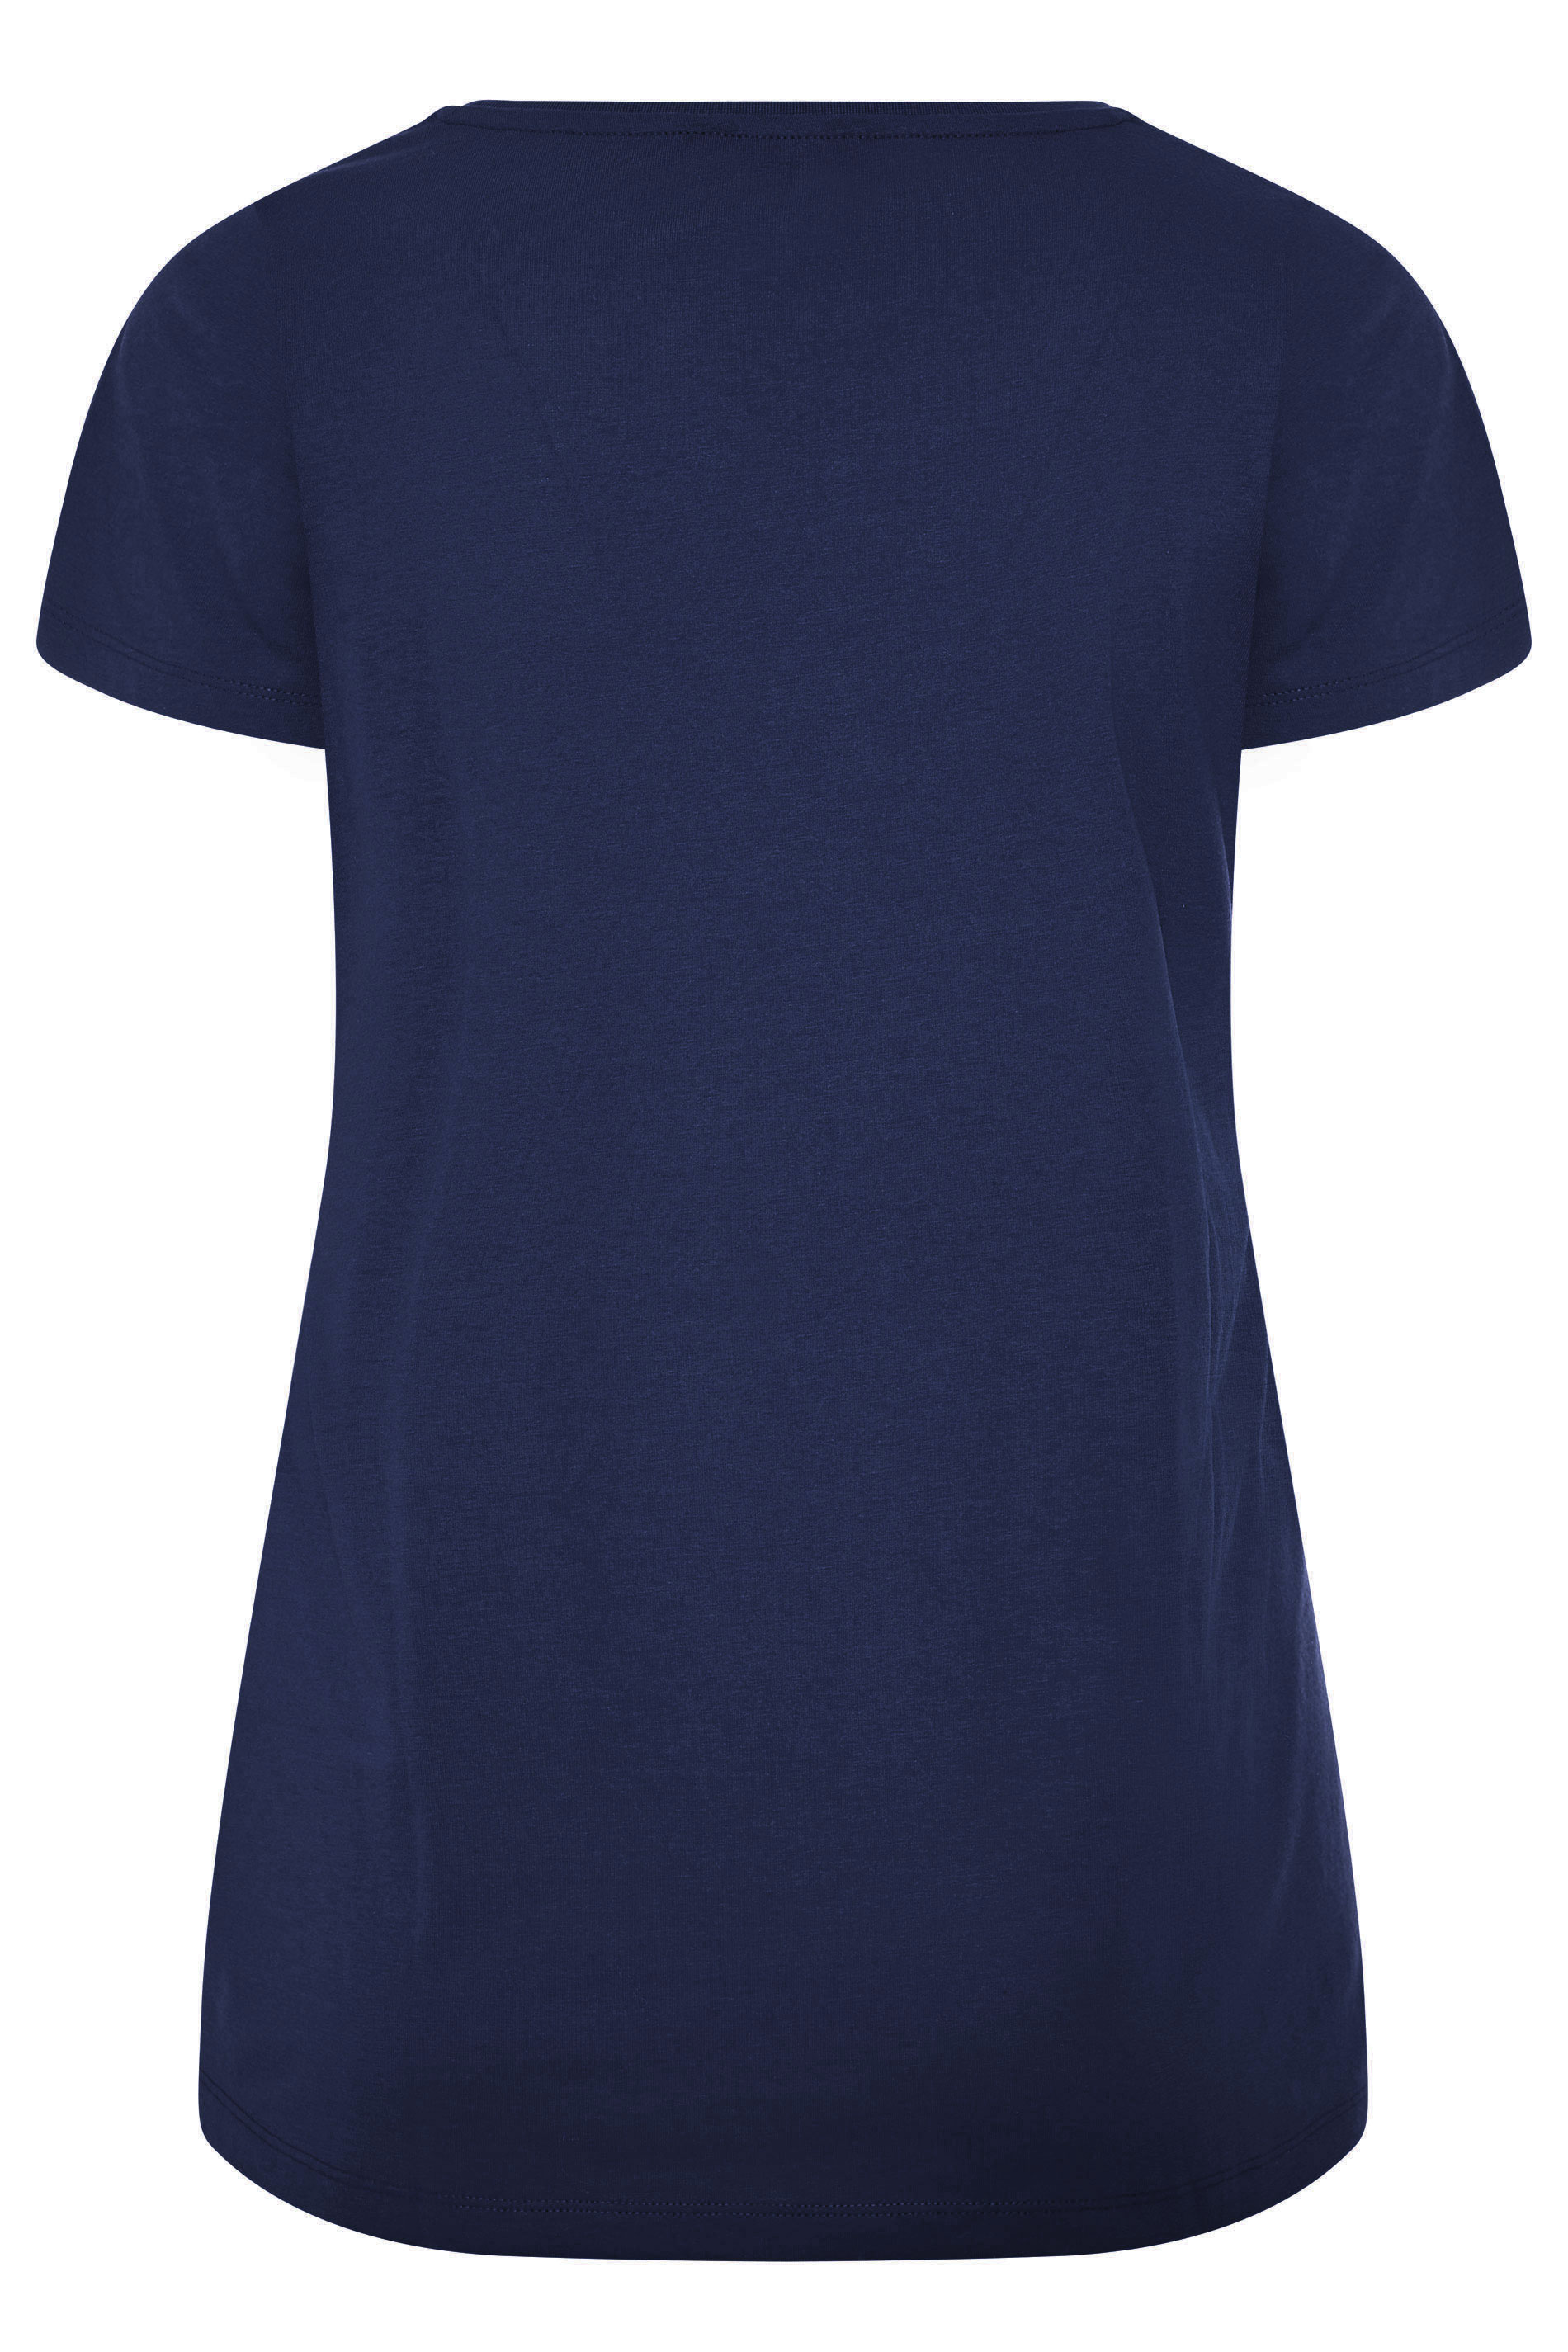 Navy Blue Basic T-Shirt | Yours Clothing